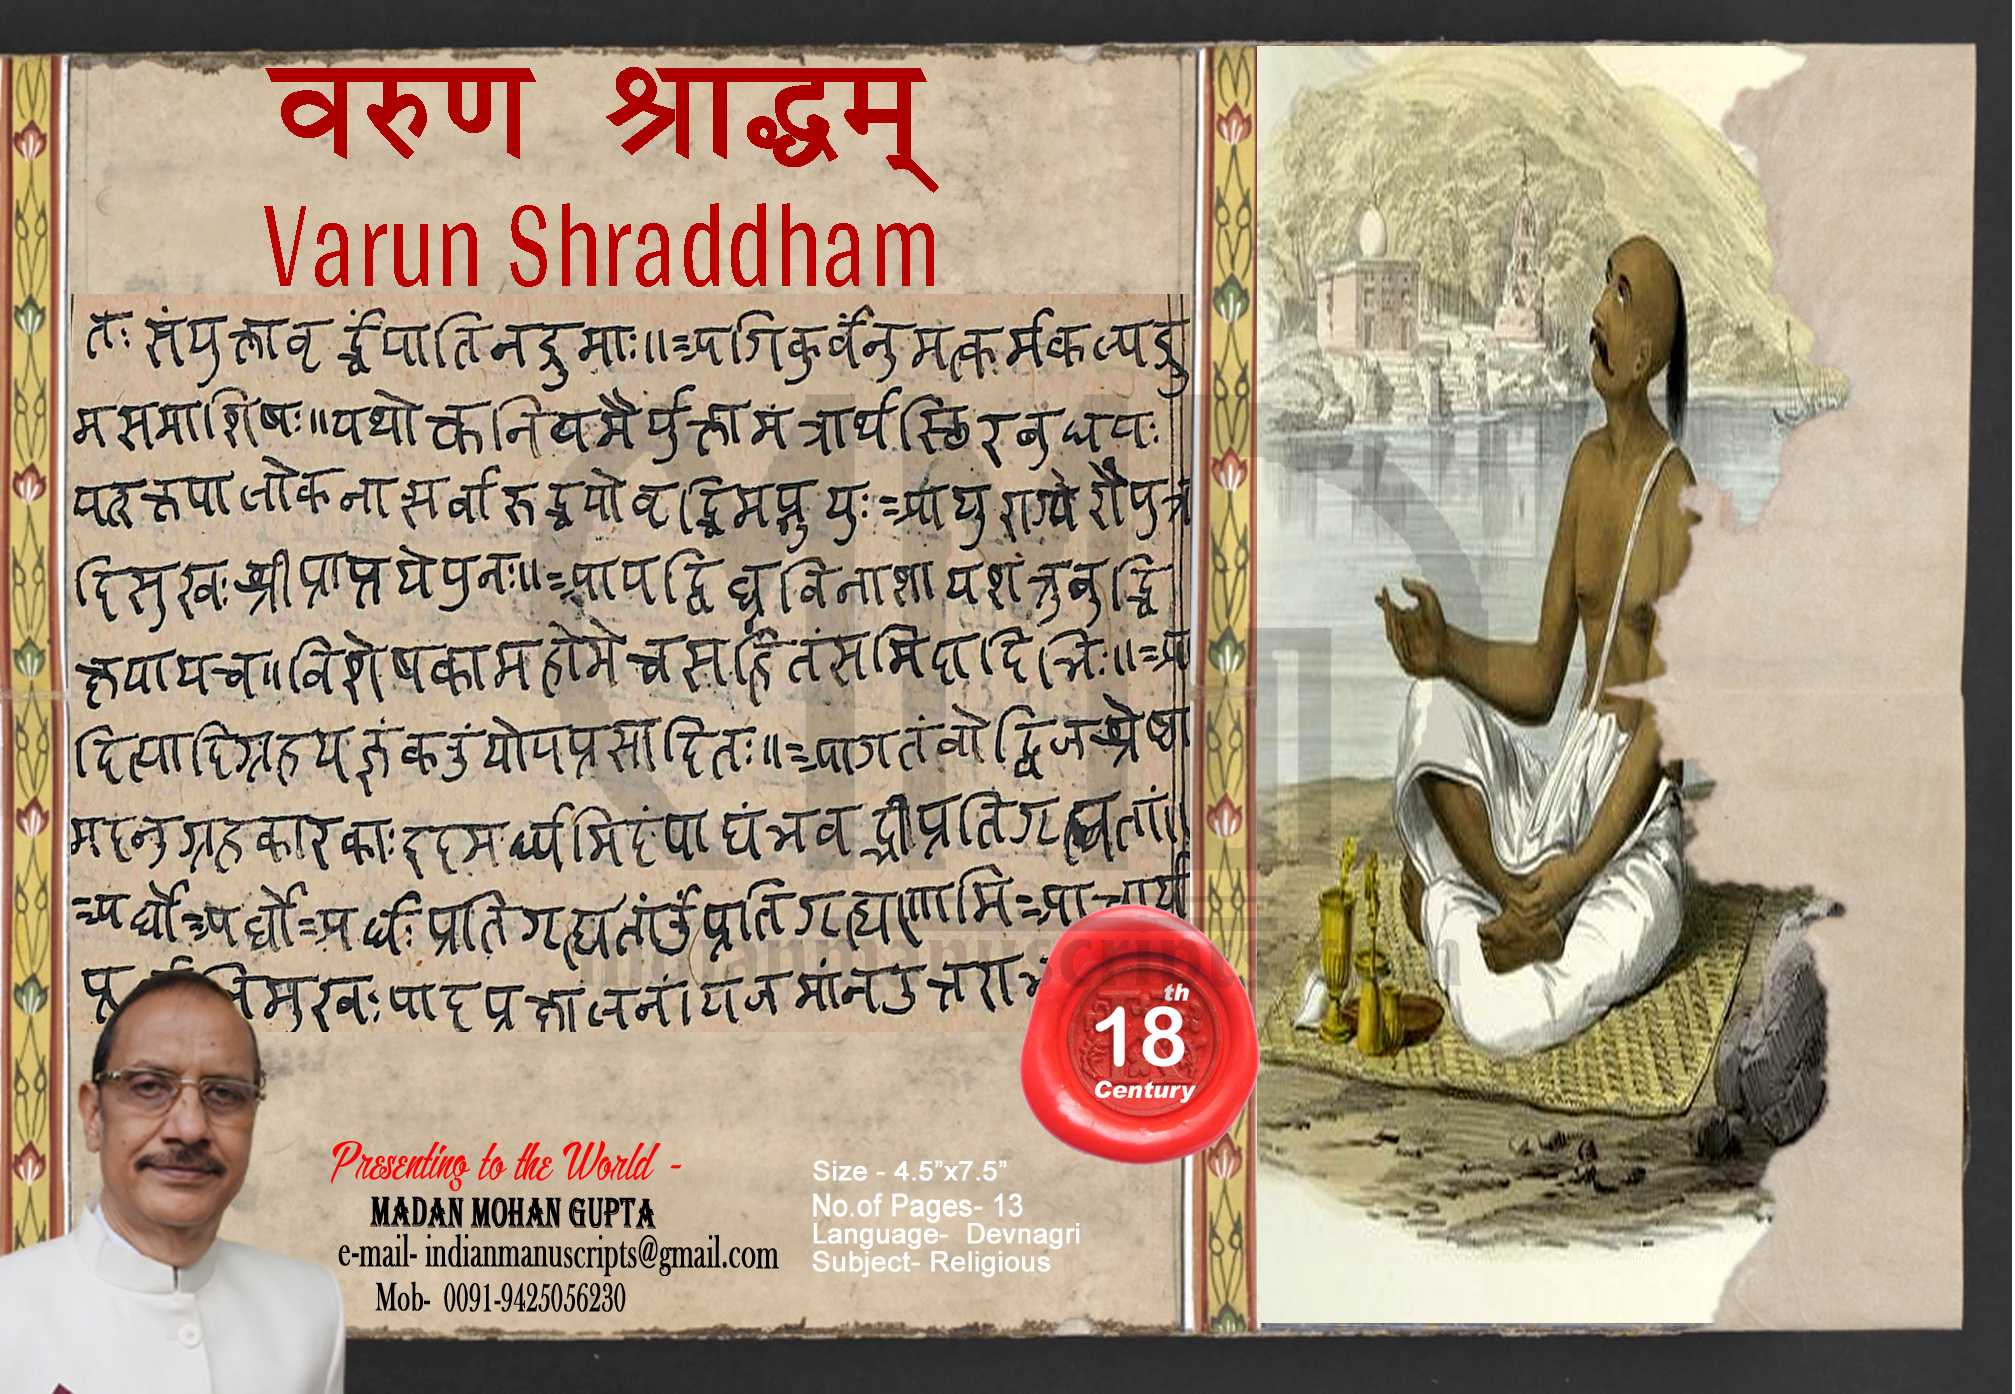 Varun Shraddham